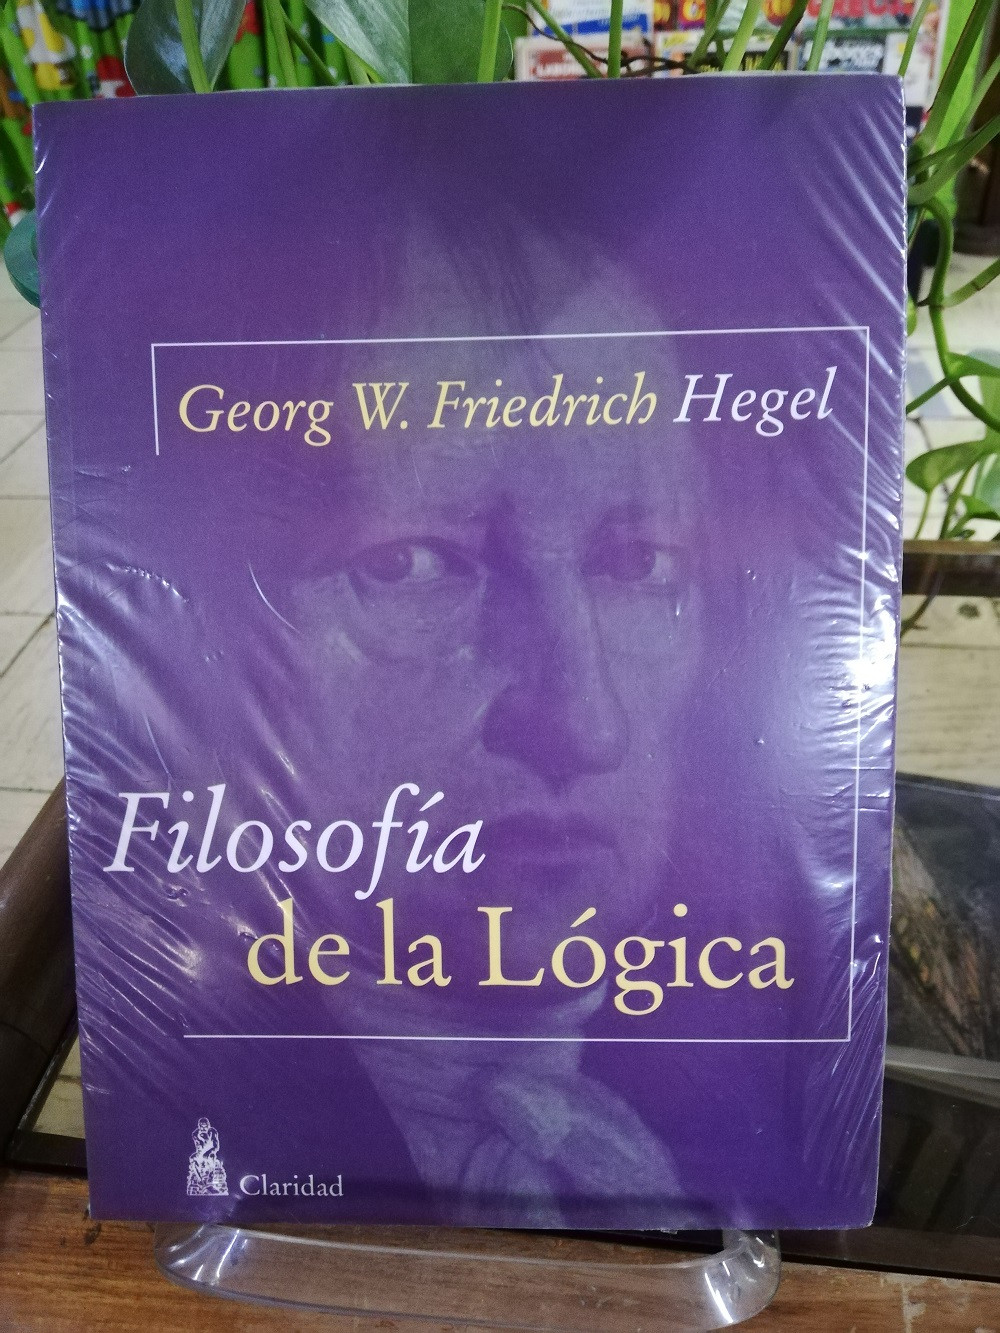 Imagen FILOSOFIA DE LA LÓGICA - GEORGE FRIEDRICH HEGEL 1